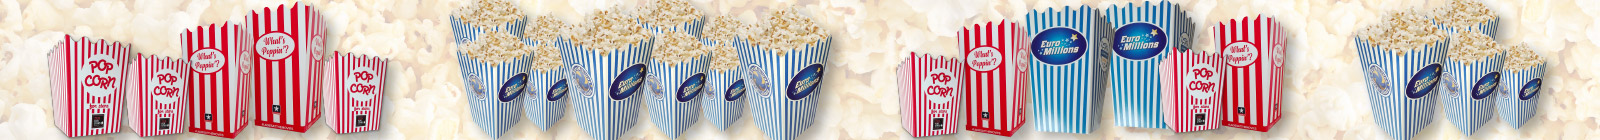 Prijs aanvragen voor bedrukte popcorndoosjes met eigen ontwerp